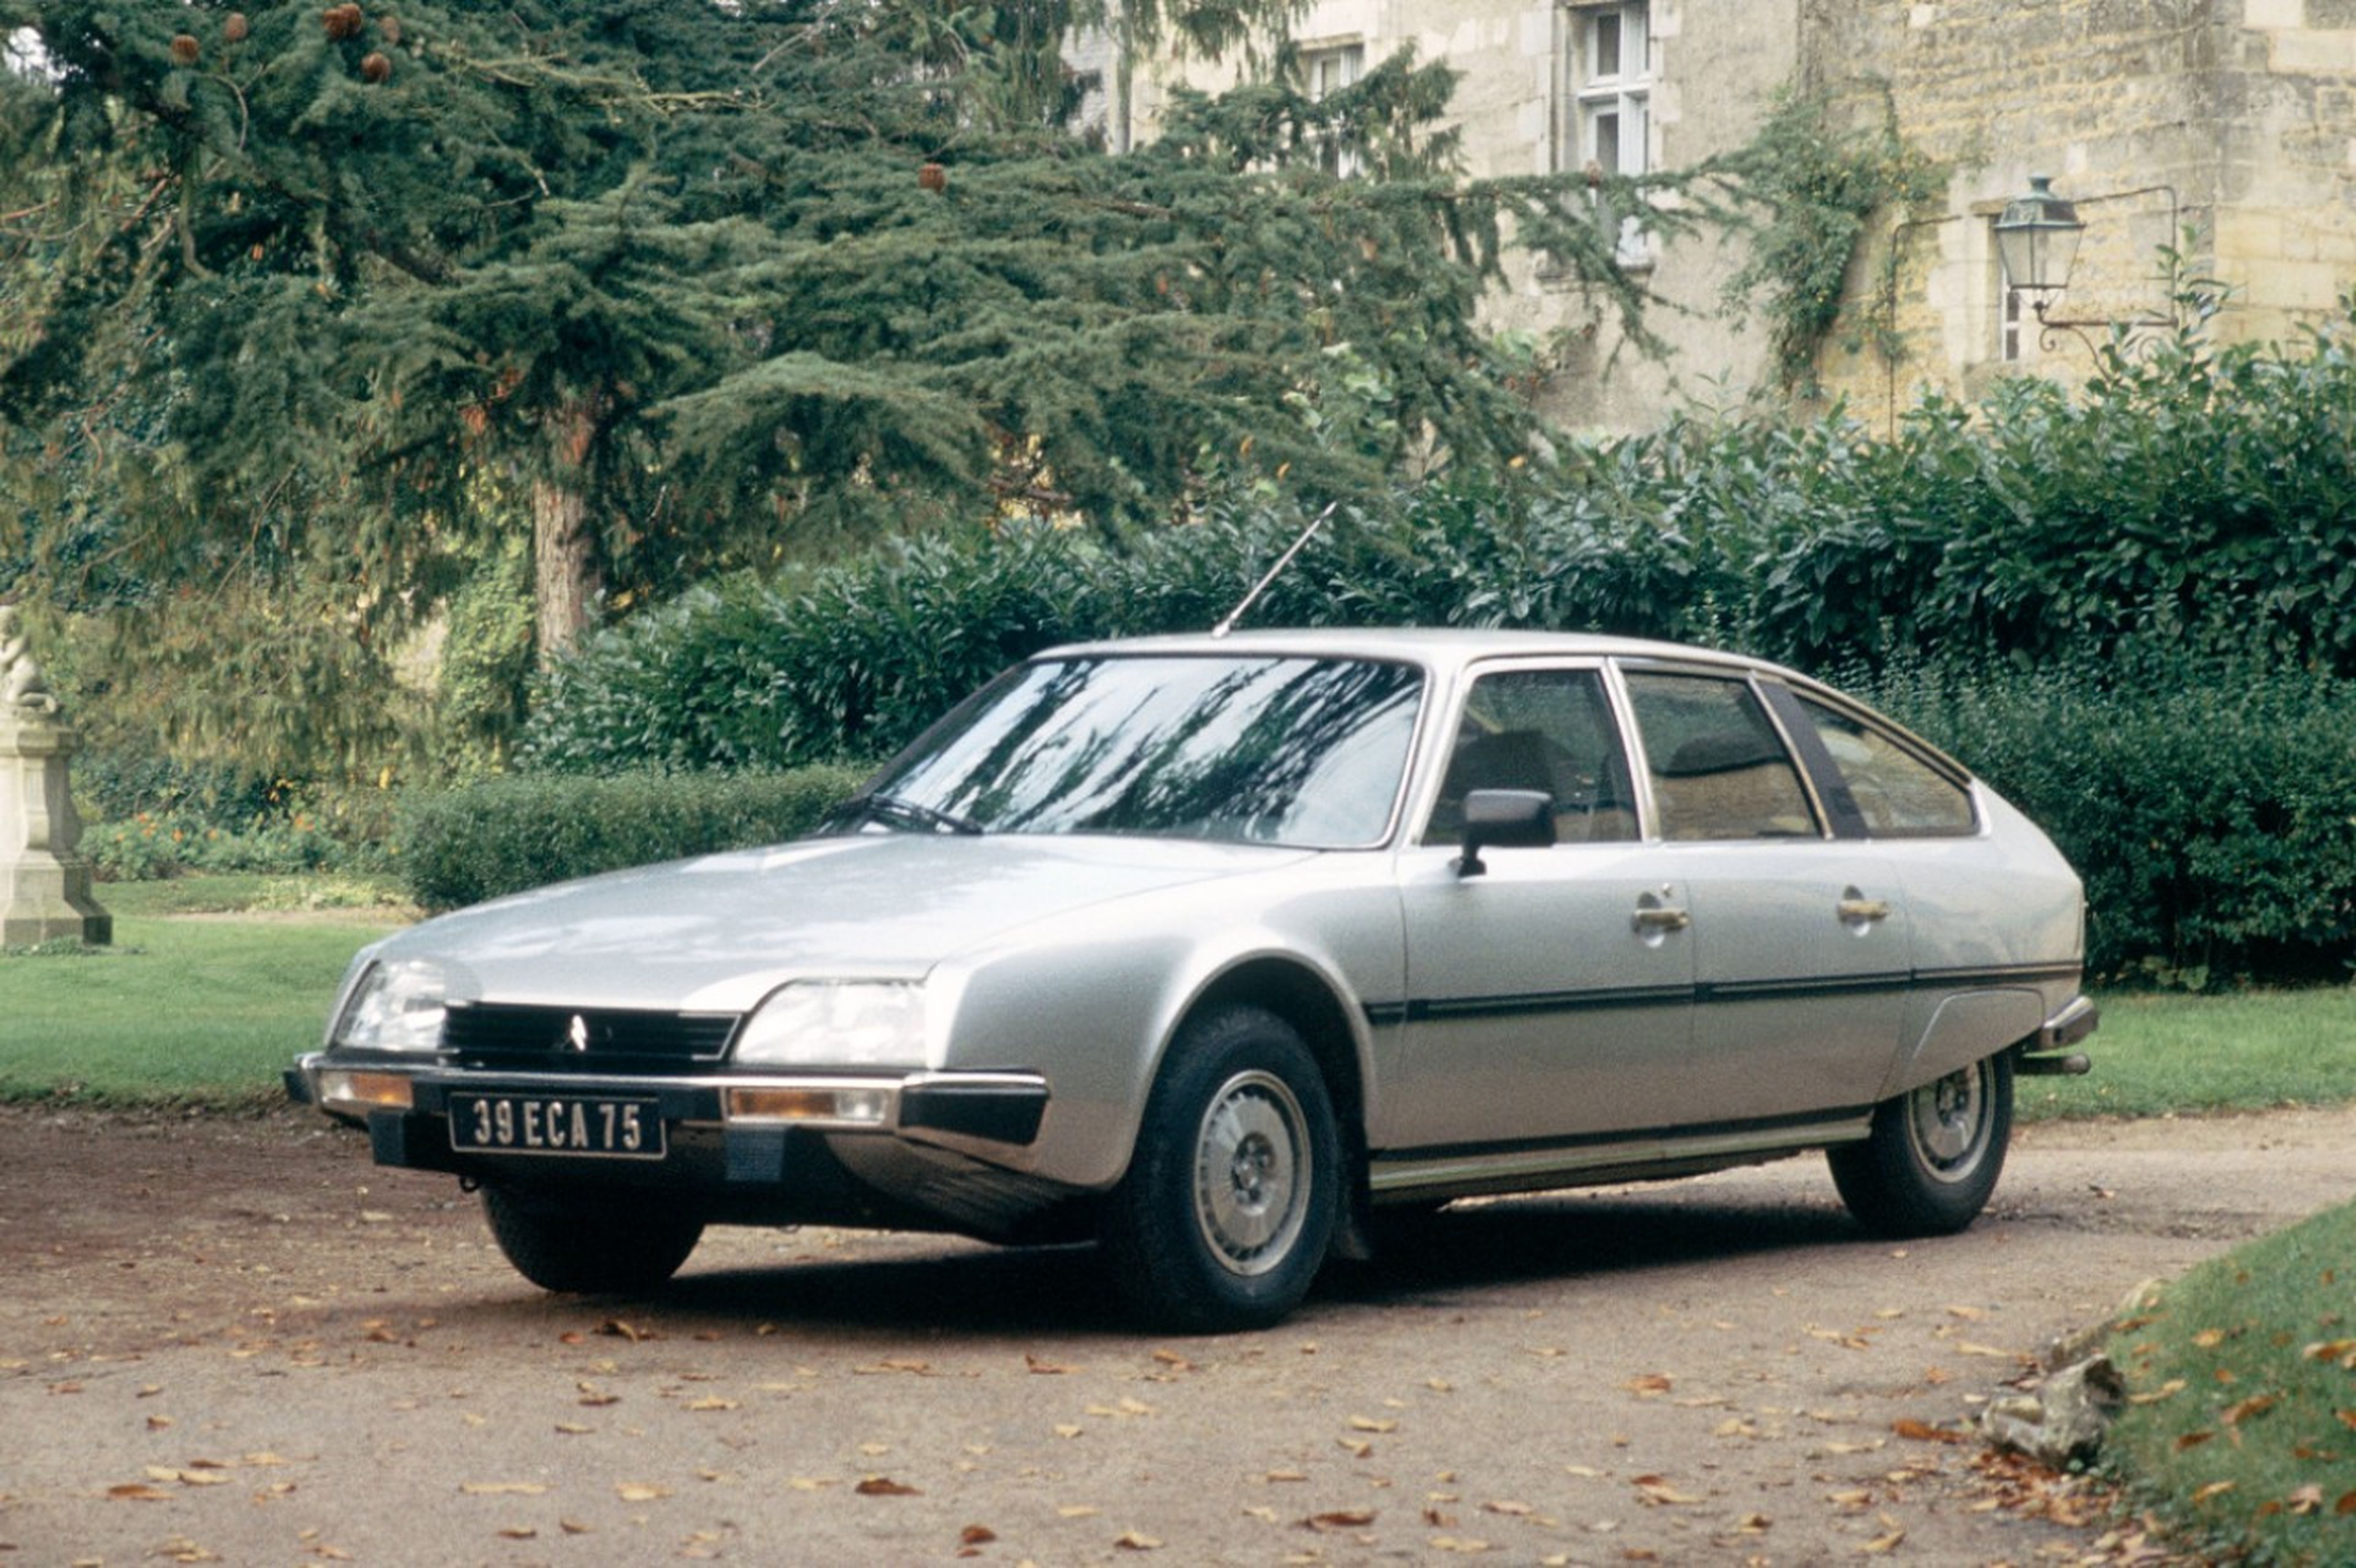 Fue el primer modelo con motor diésel de Citroën